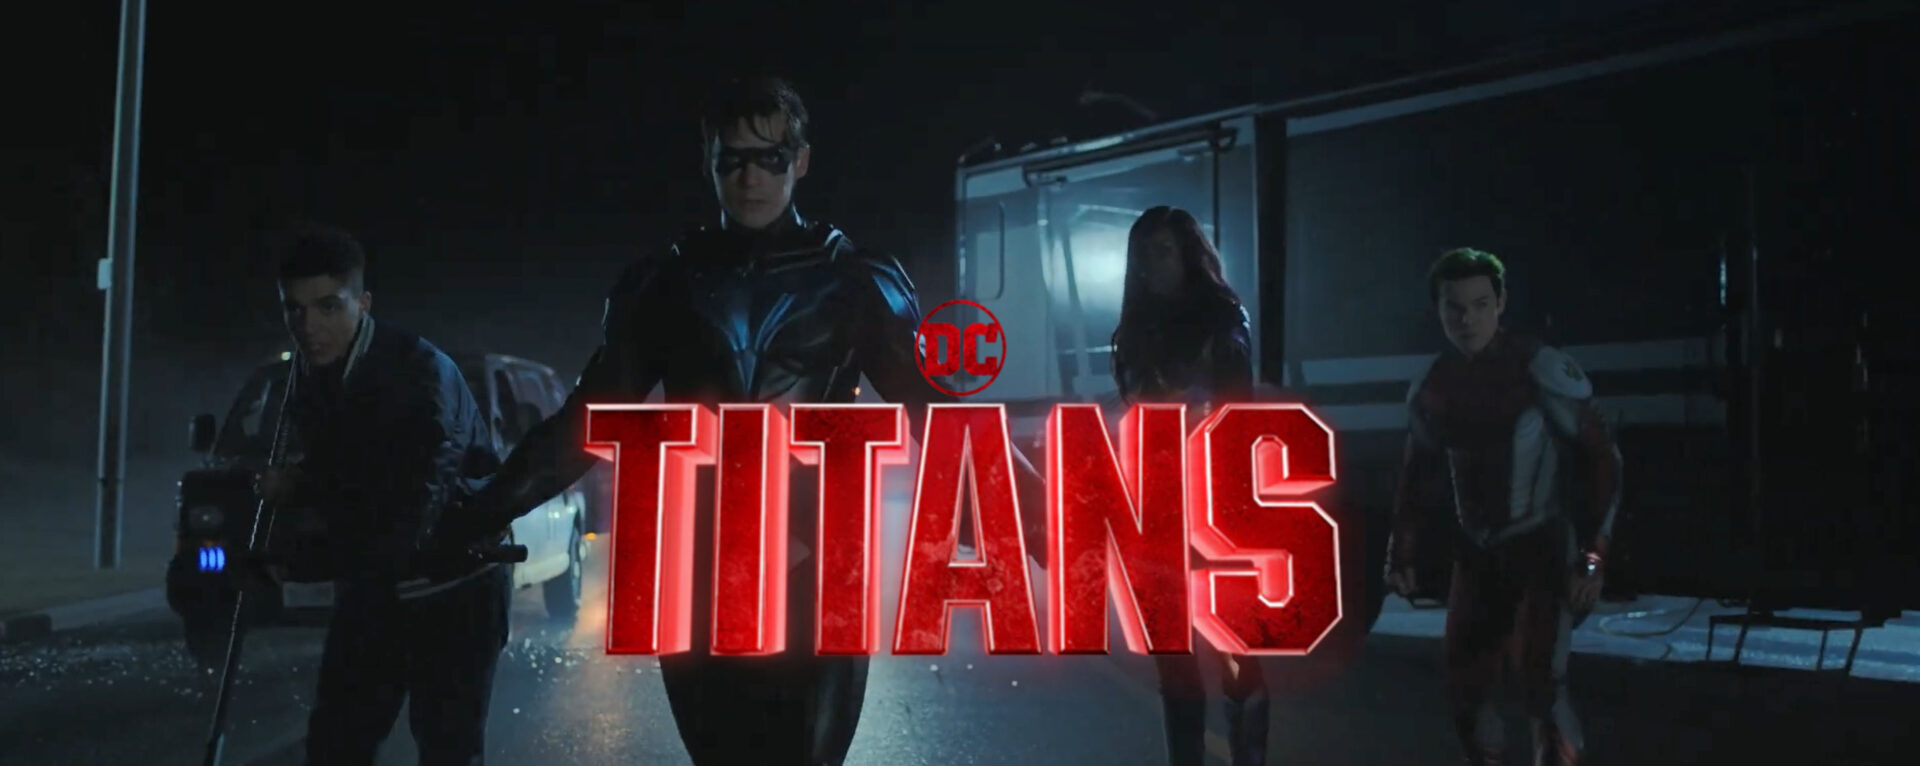 titans s4 teaser trailer banner1